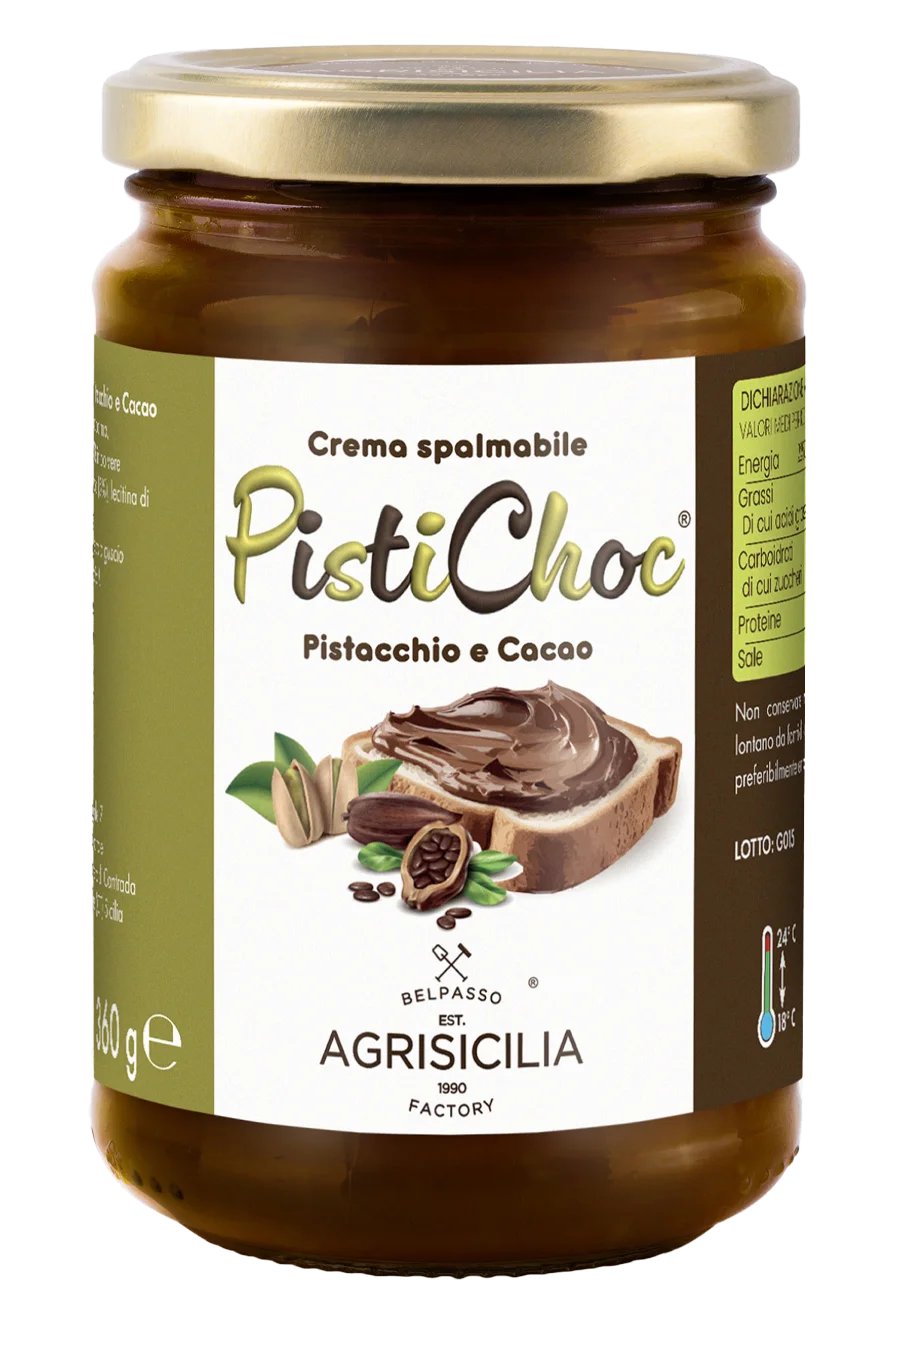 Crema spalmabile PistiChoc® al Pistacchio e Cacao